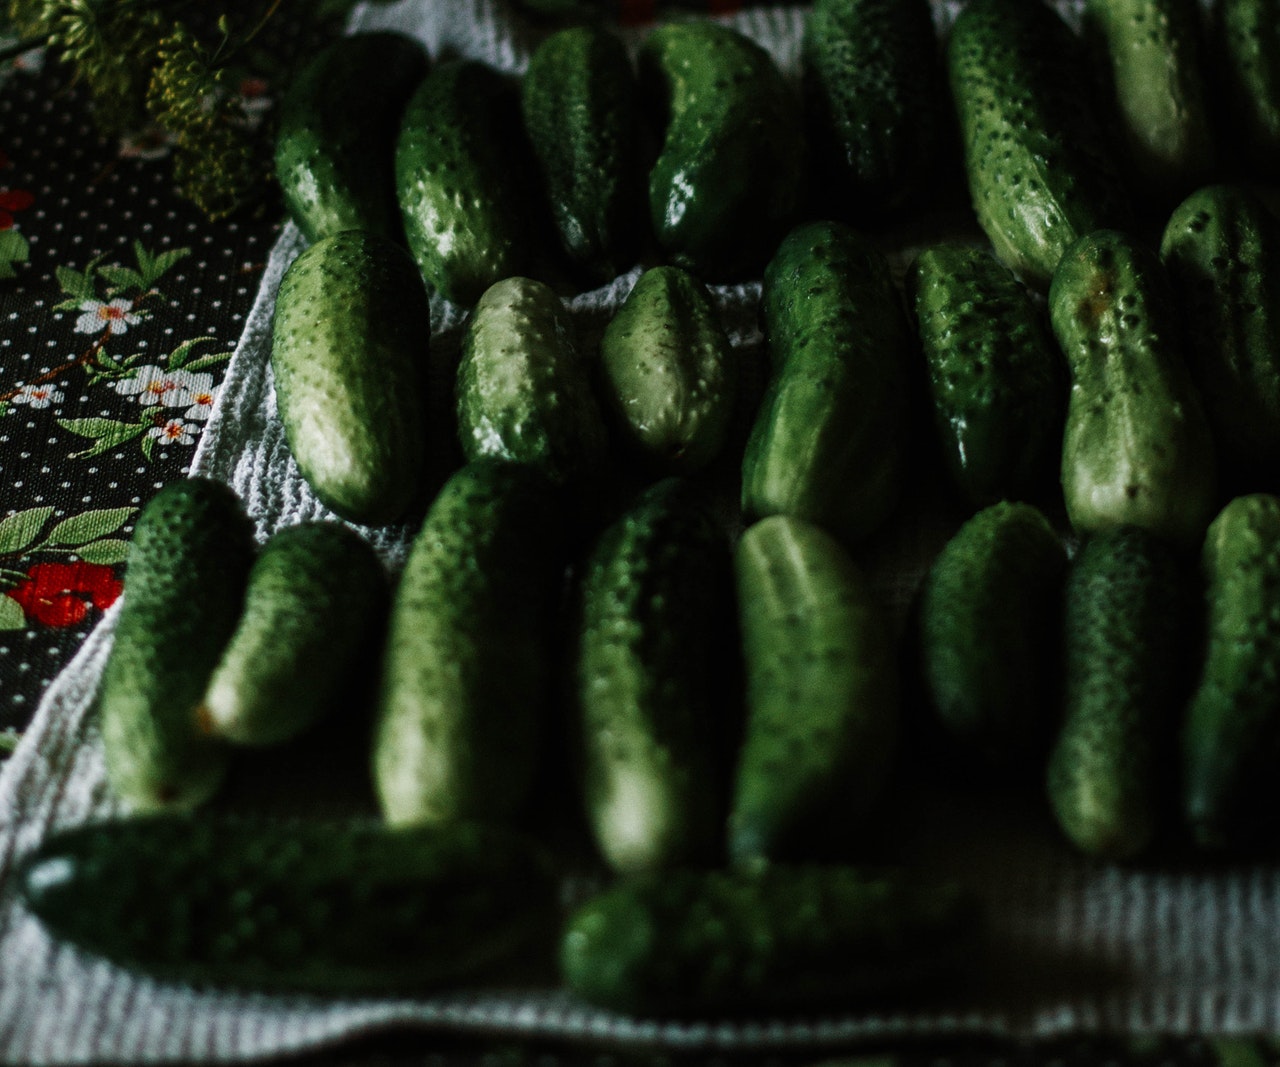 Many harvestes and fresh cucumberes